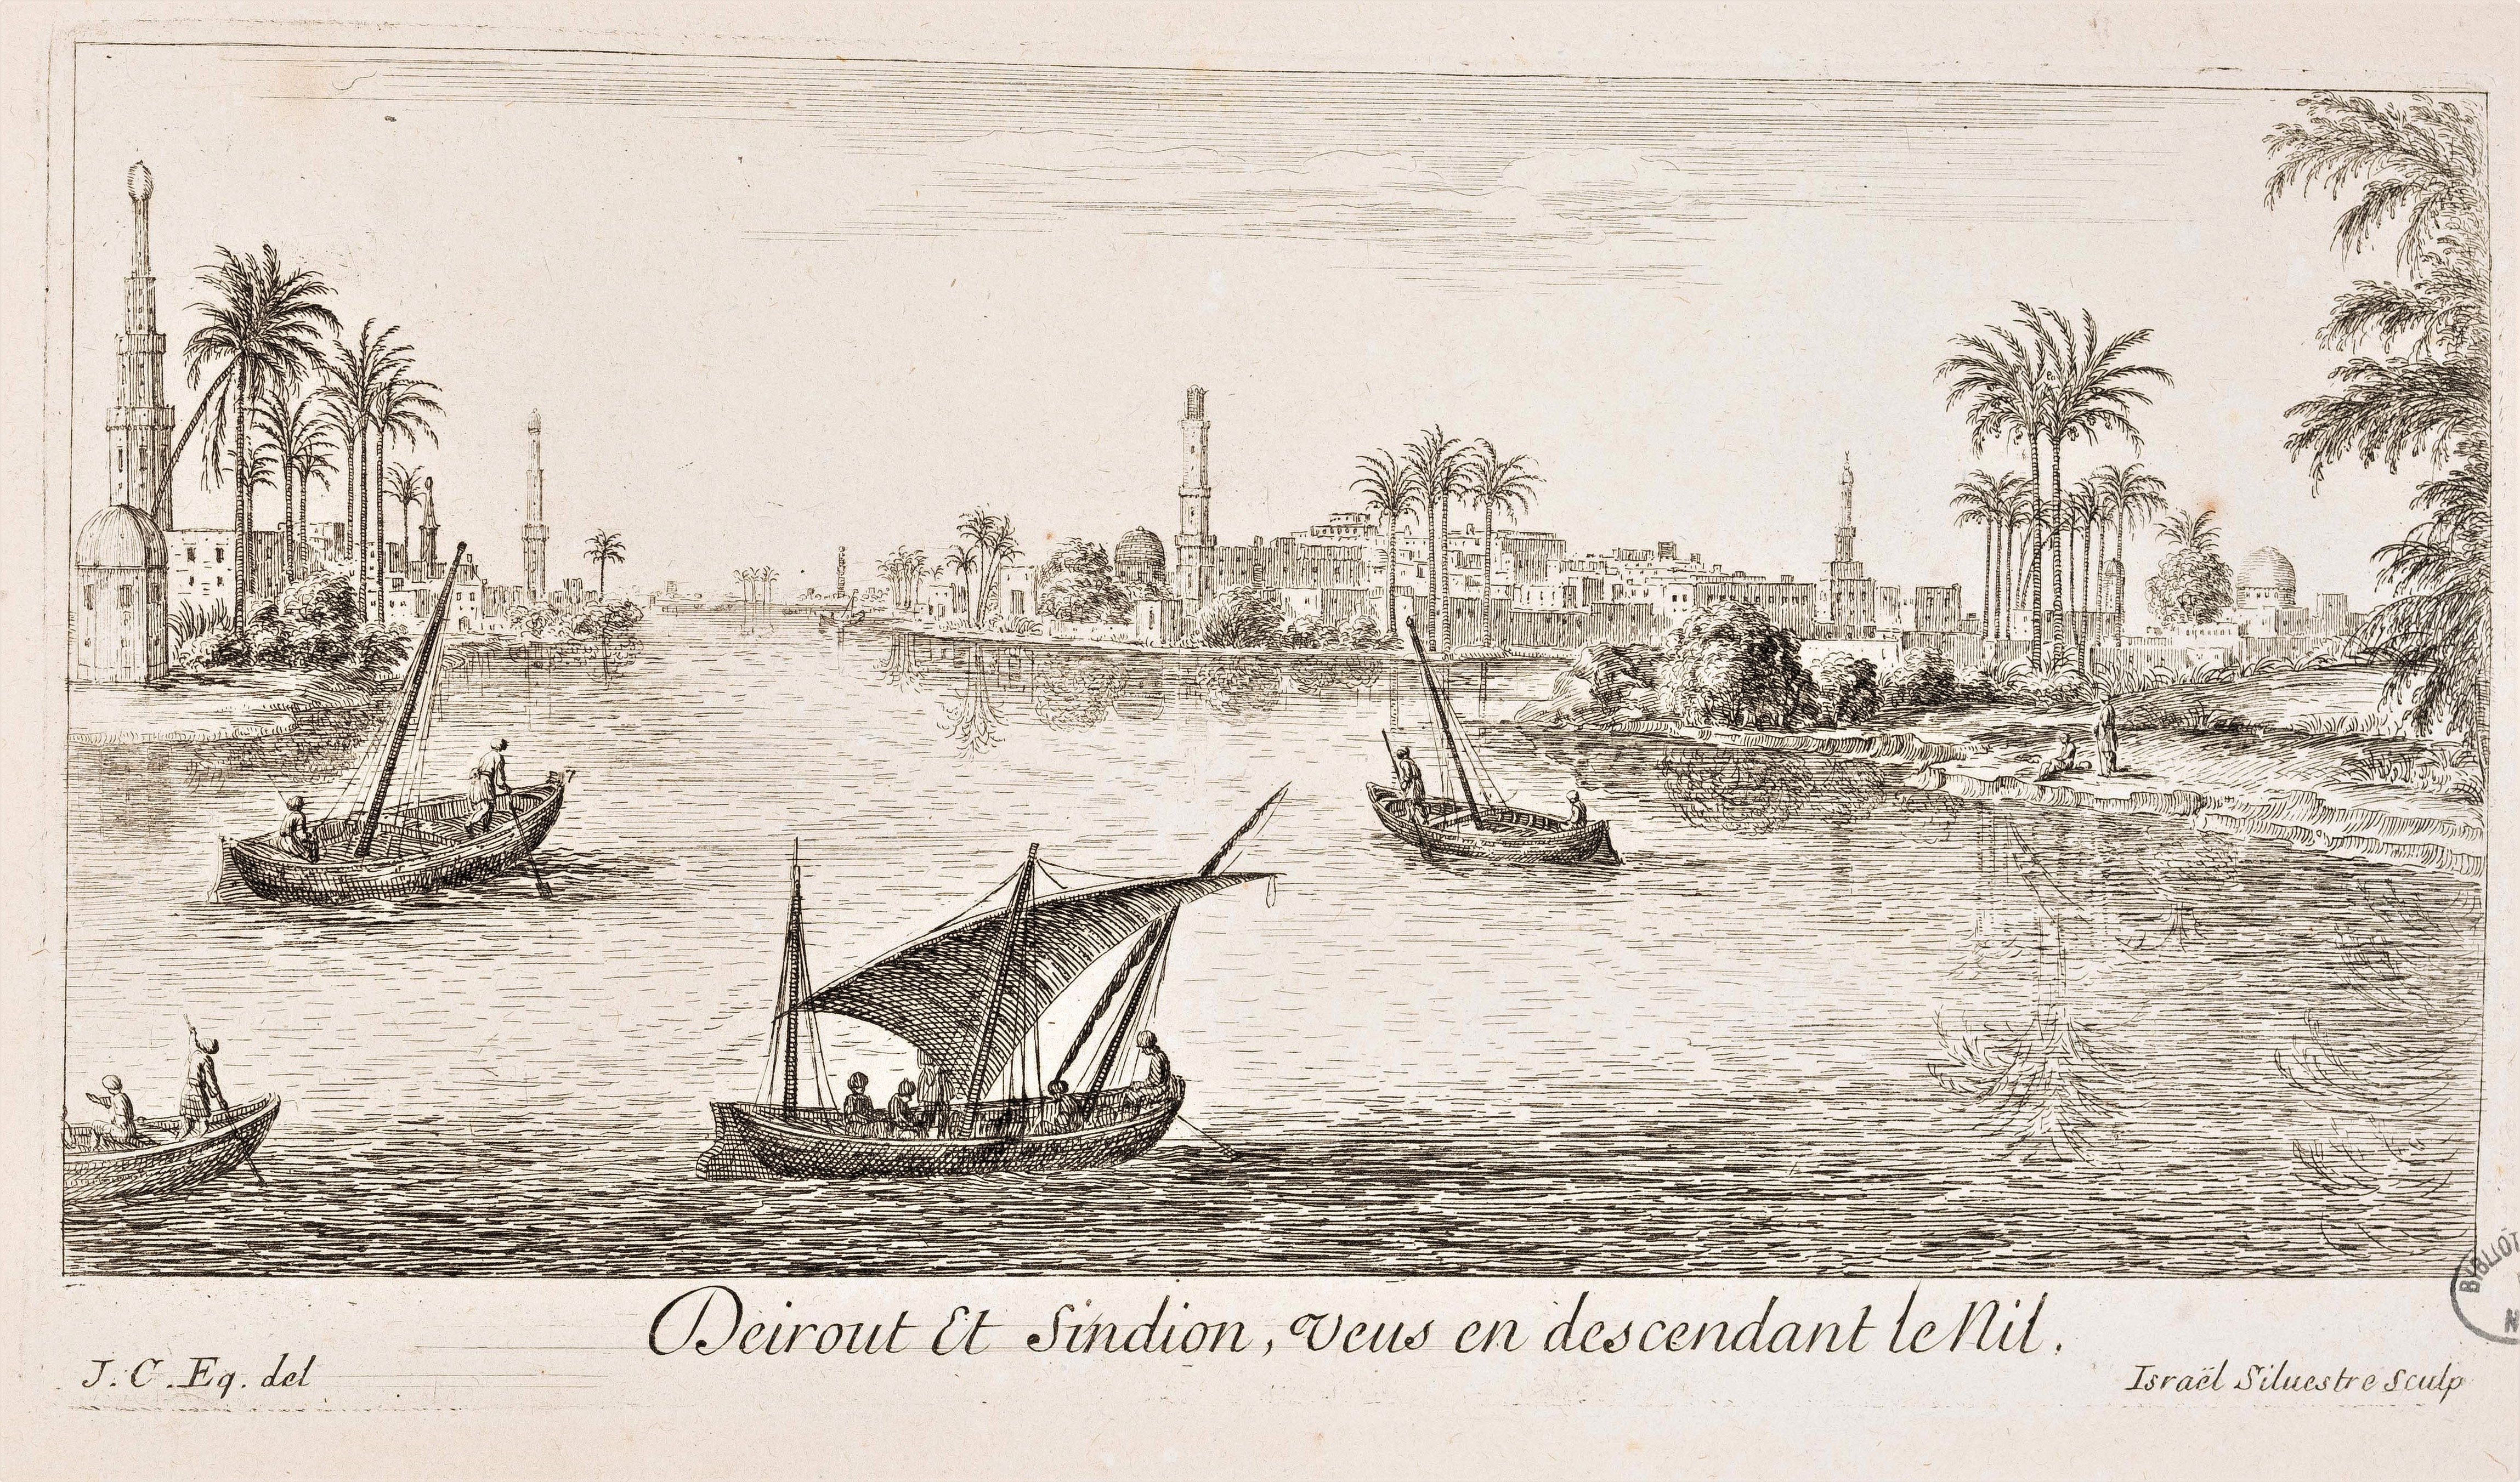 Israël Silvestre : Deirout et Sindion, Veus en descendant le Nil.